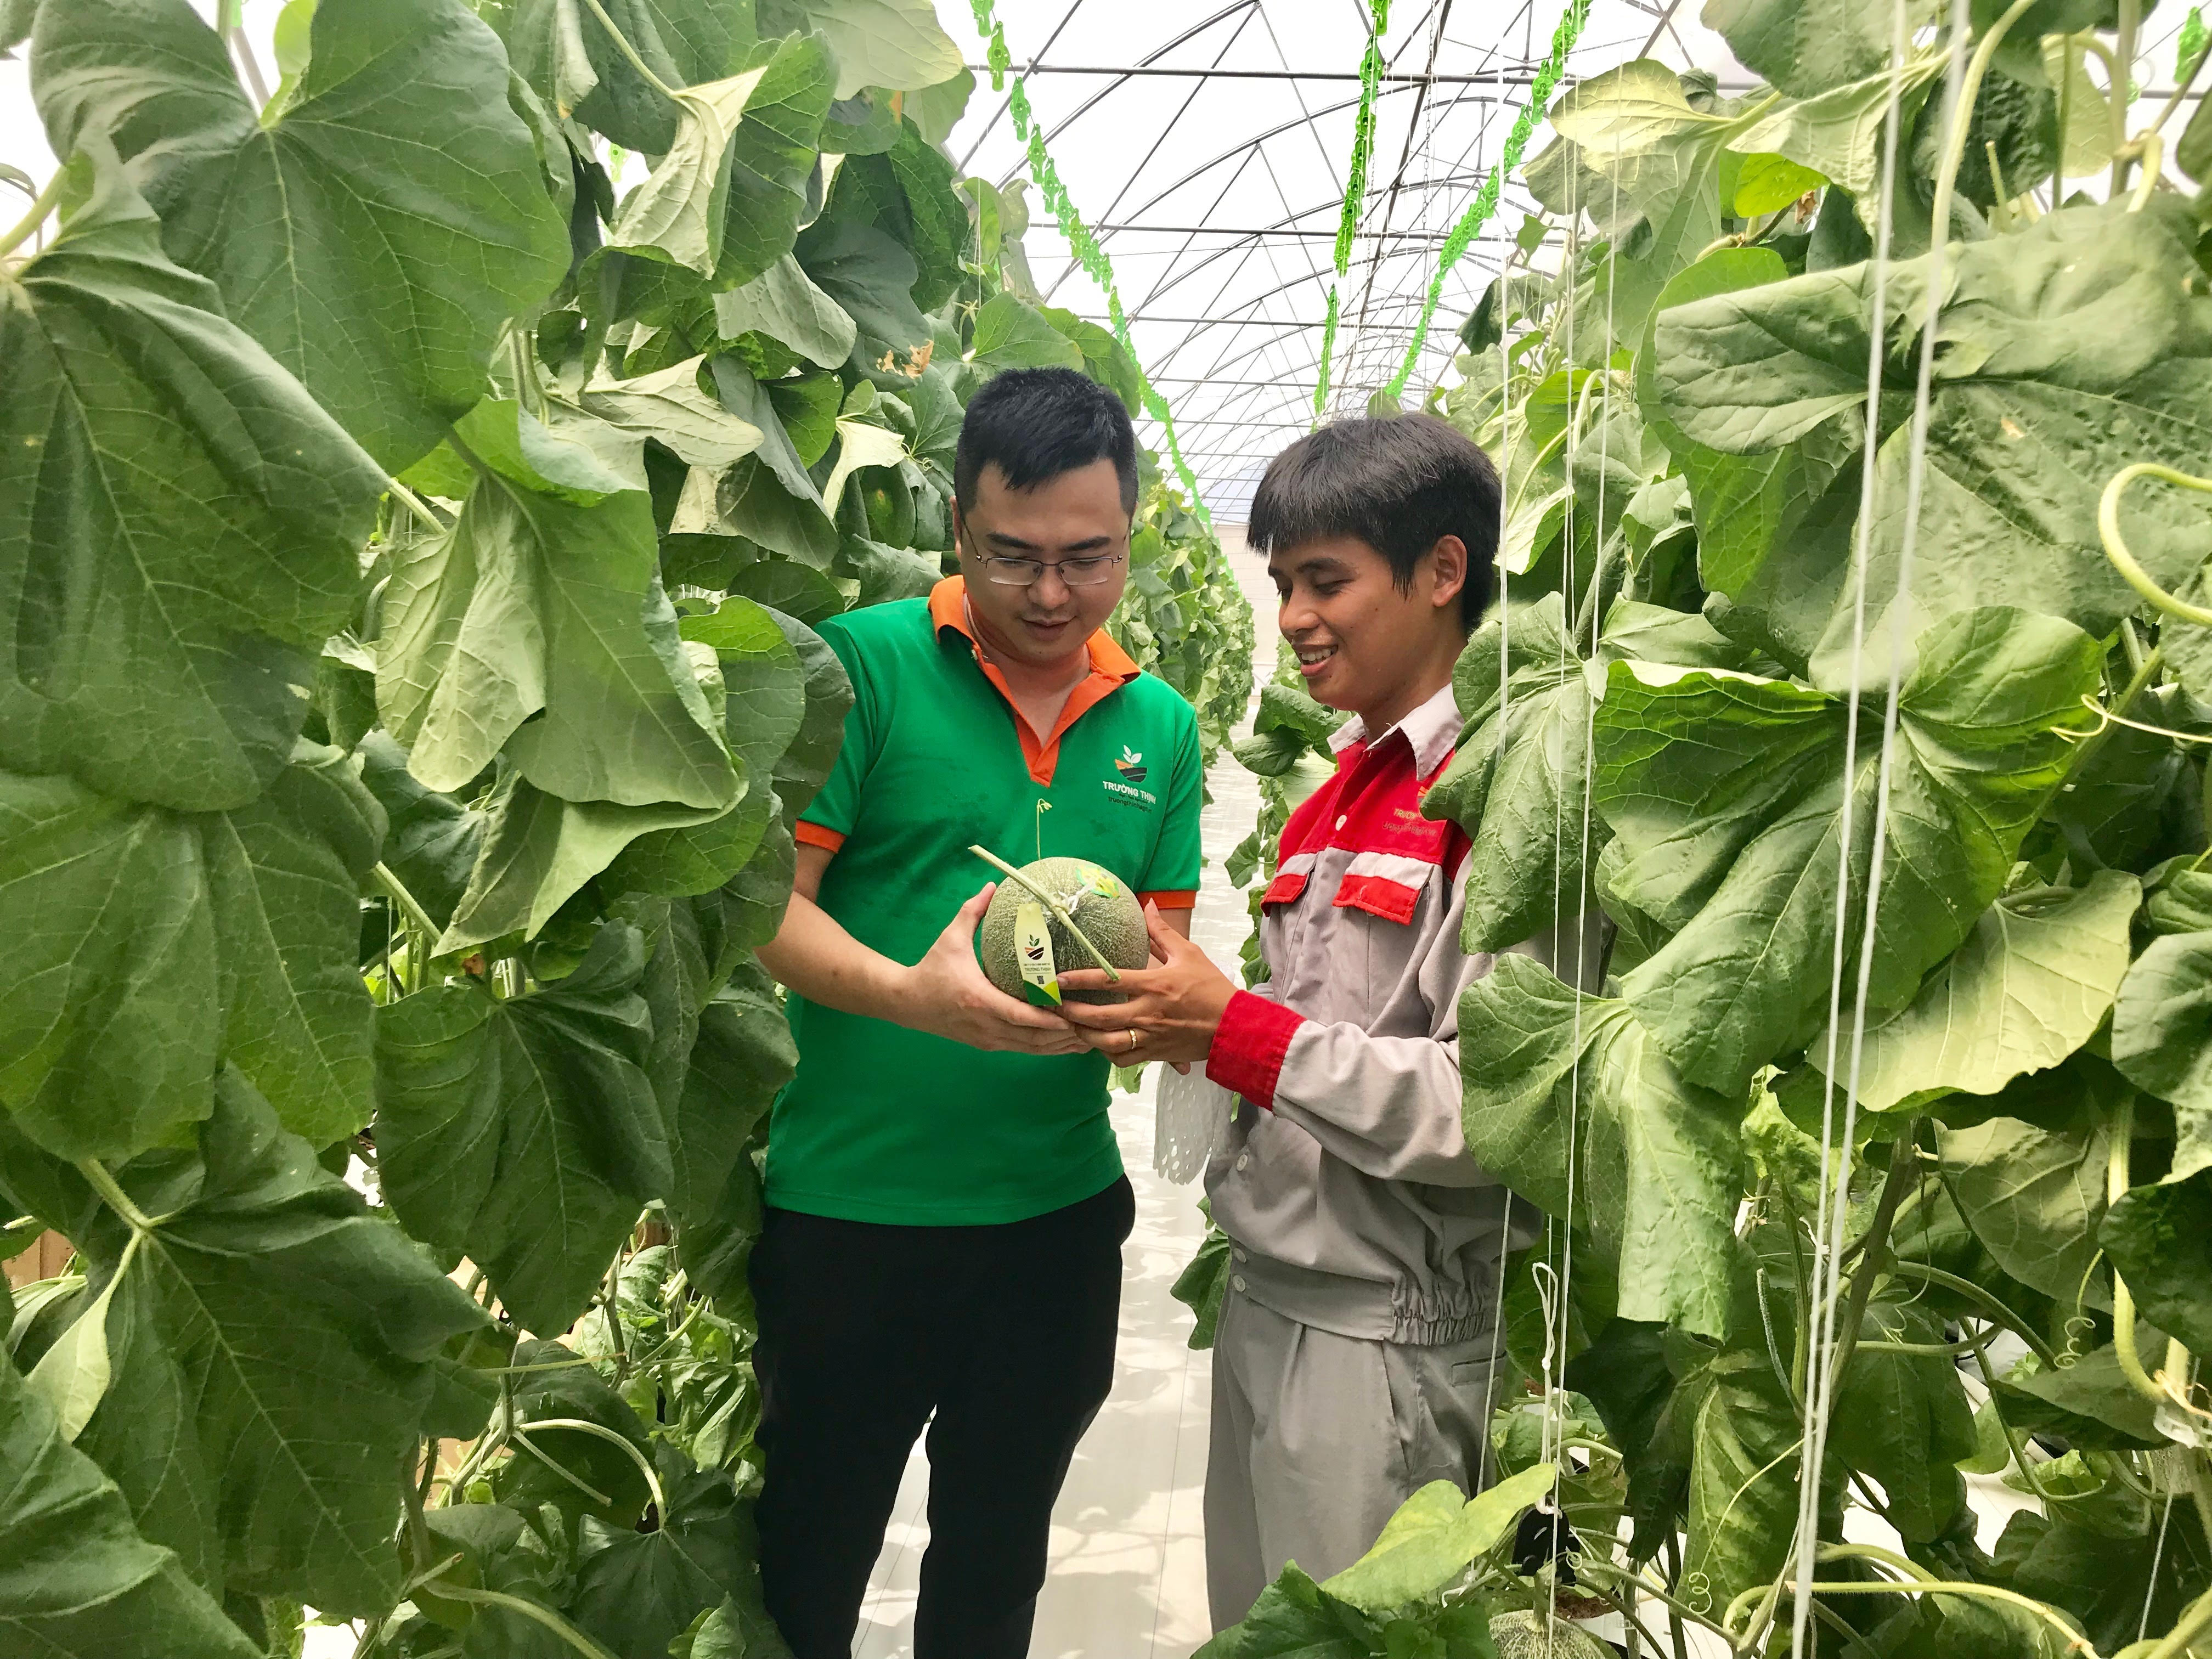 Bắc Ninh phát triển nông nghiệp công nghệ cao theo hướng bền vững